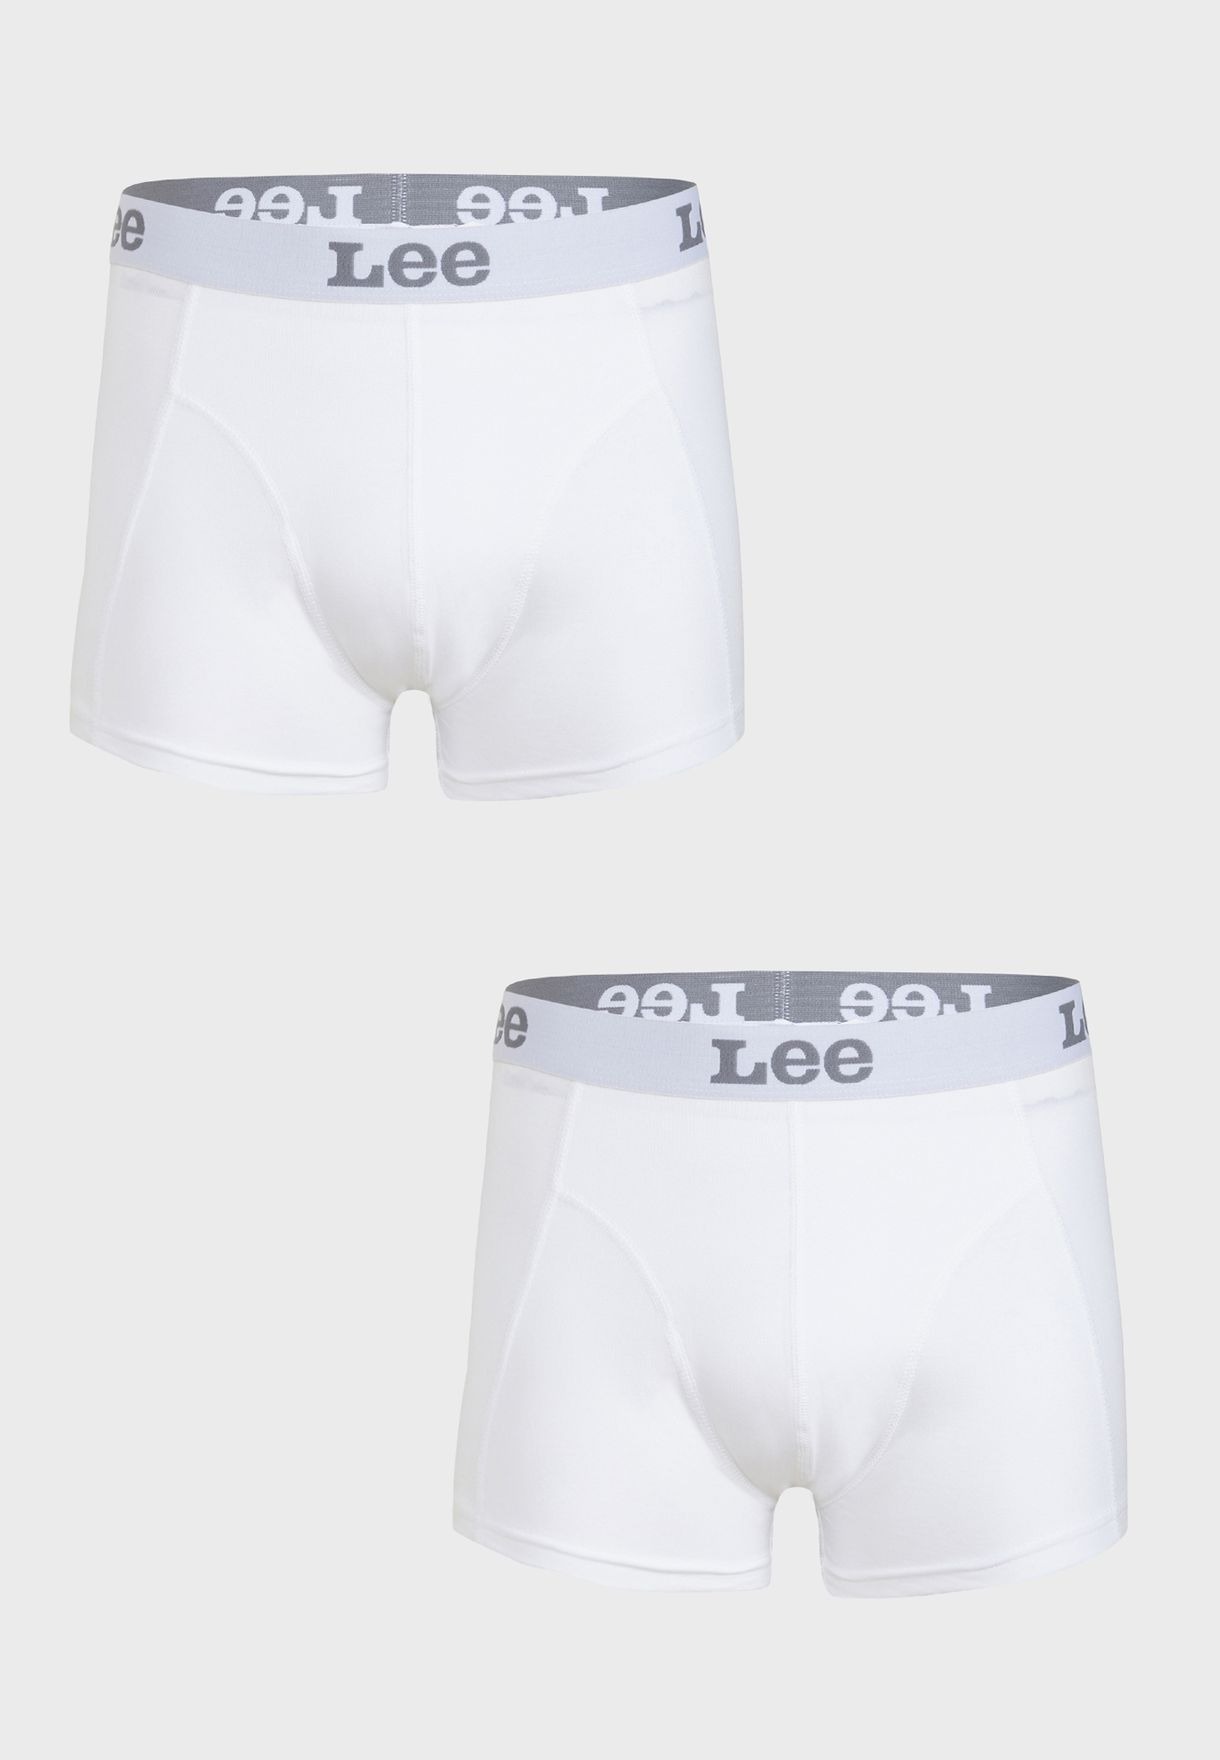 Комплект трусов мужских Lee LP03CK12 белых XL